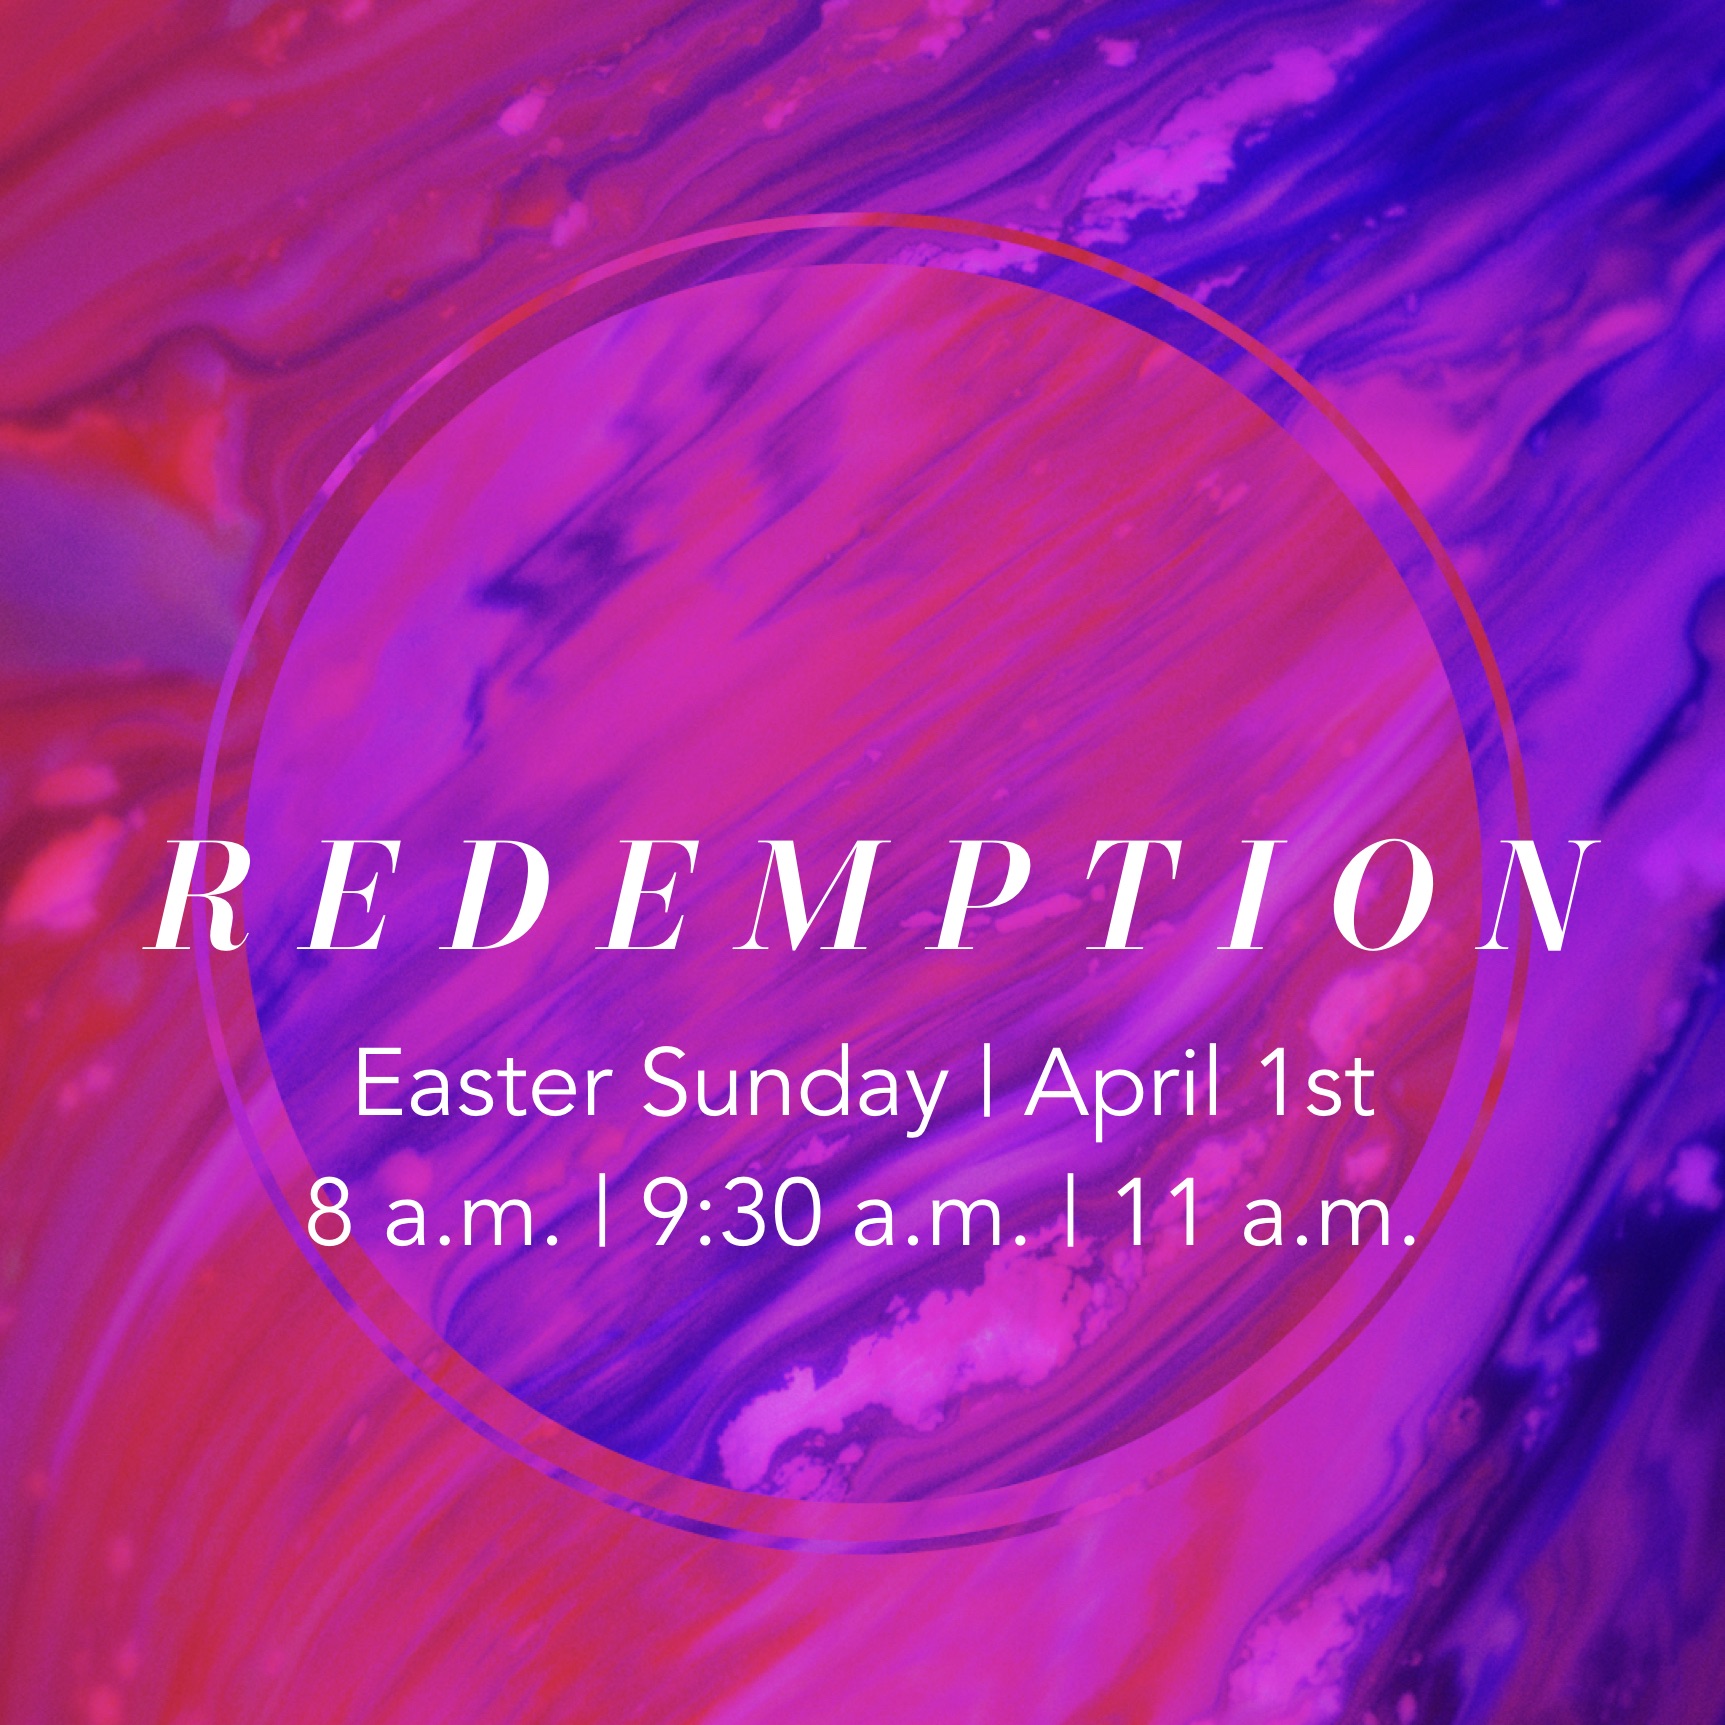 Easter 2018: Redemption